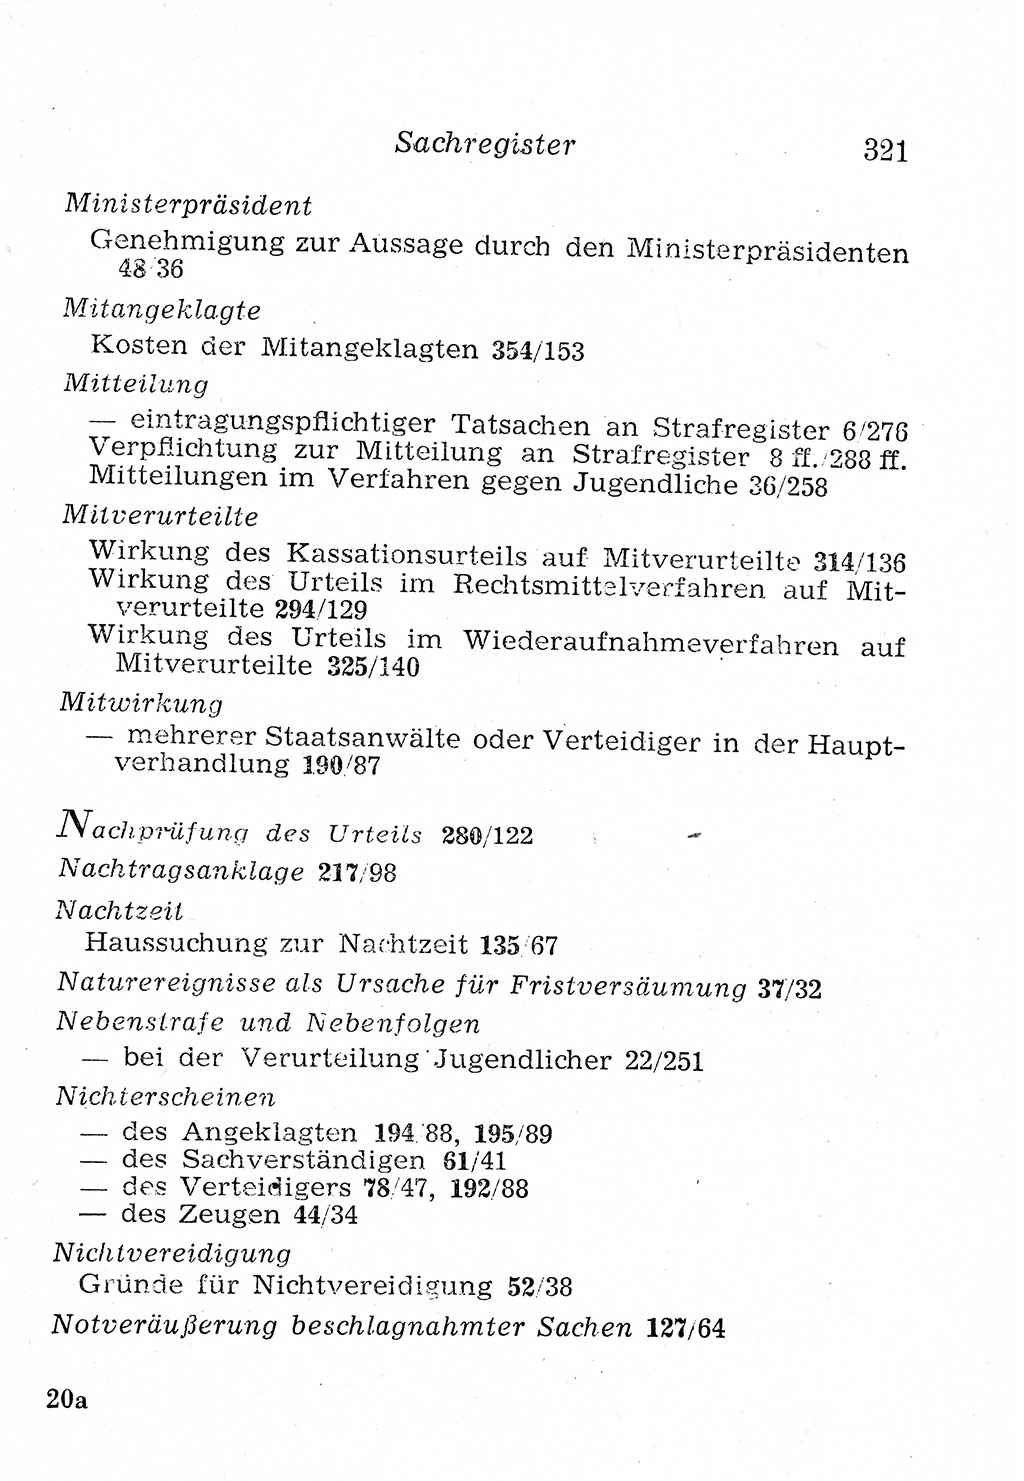 Strafprozeßordnung (StPO), Gerichtsverfassungsgesetz (GVG), Staatsanwaltsgesetz (StAG), Jugendgerichtsgesetz (JGG) und Strafregistergesetz (StRegG) [Deutsche Demokratische Republik (DDR)] 1958, Seite 321 (StPO GVG StAG JGG StRegG DDR 1958, S. 321)